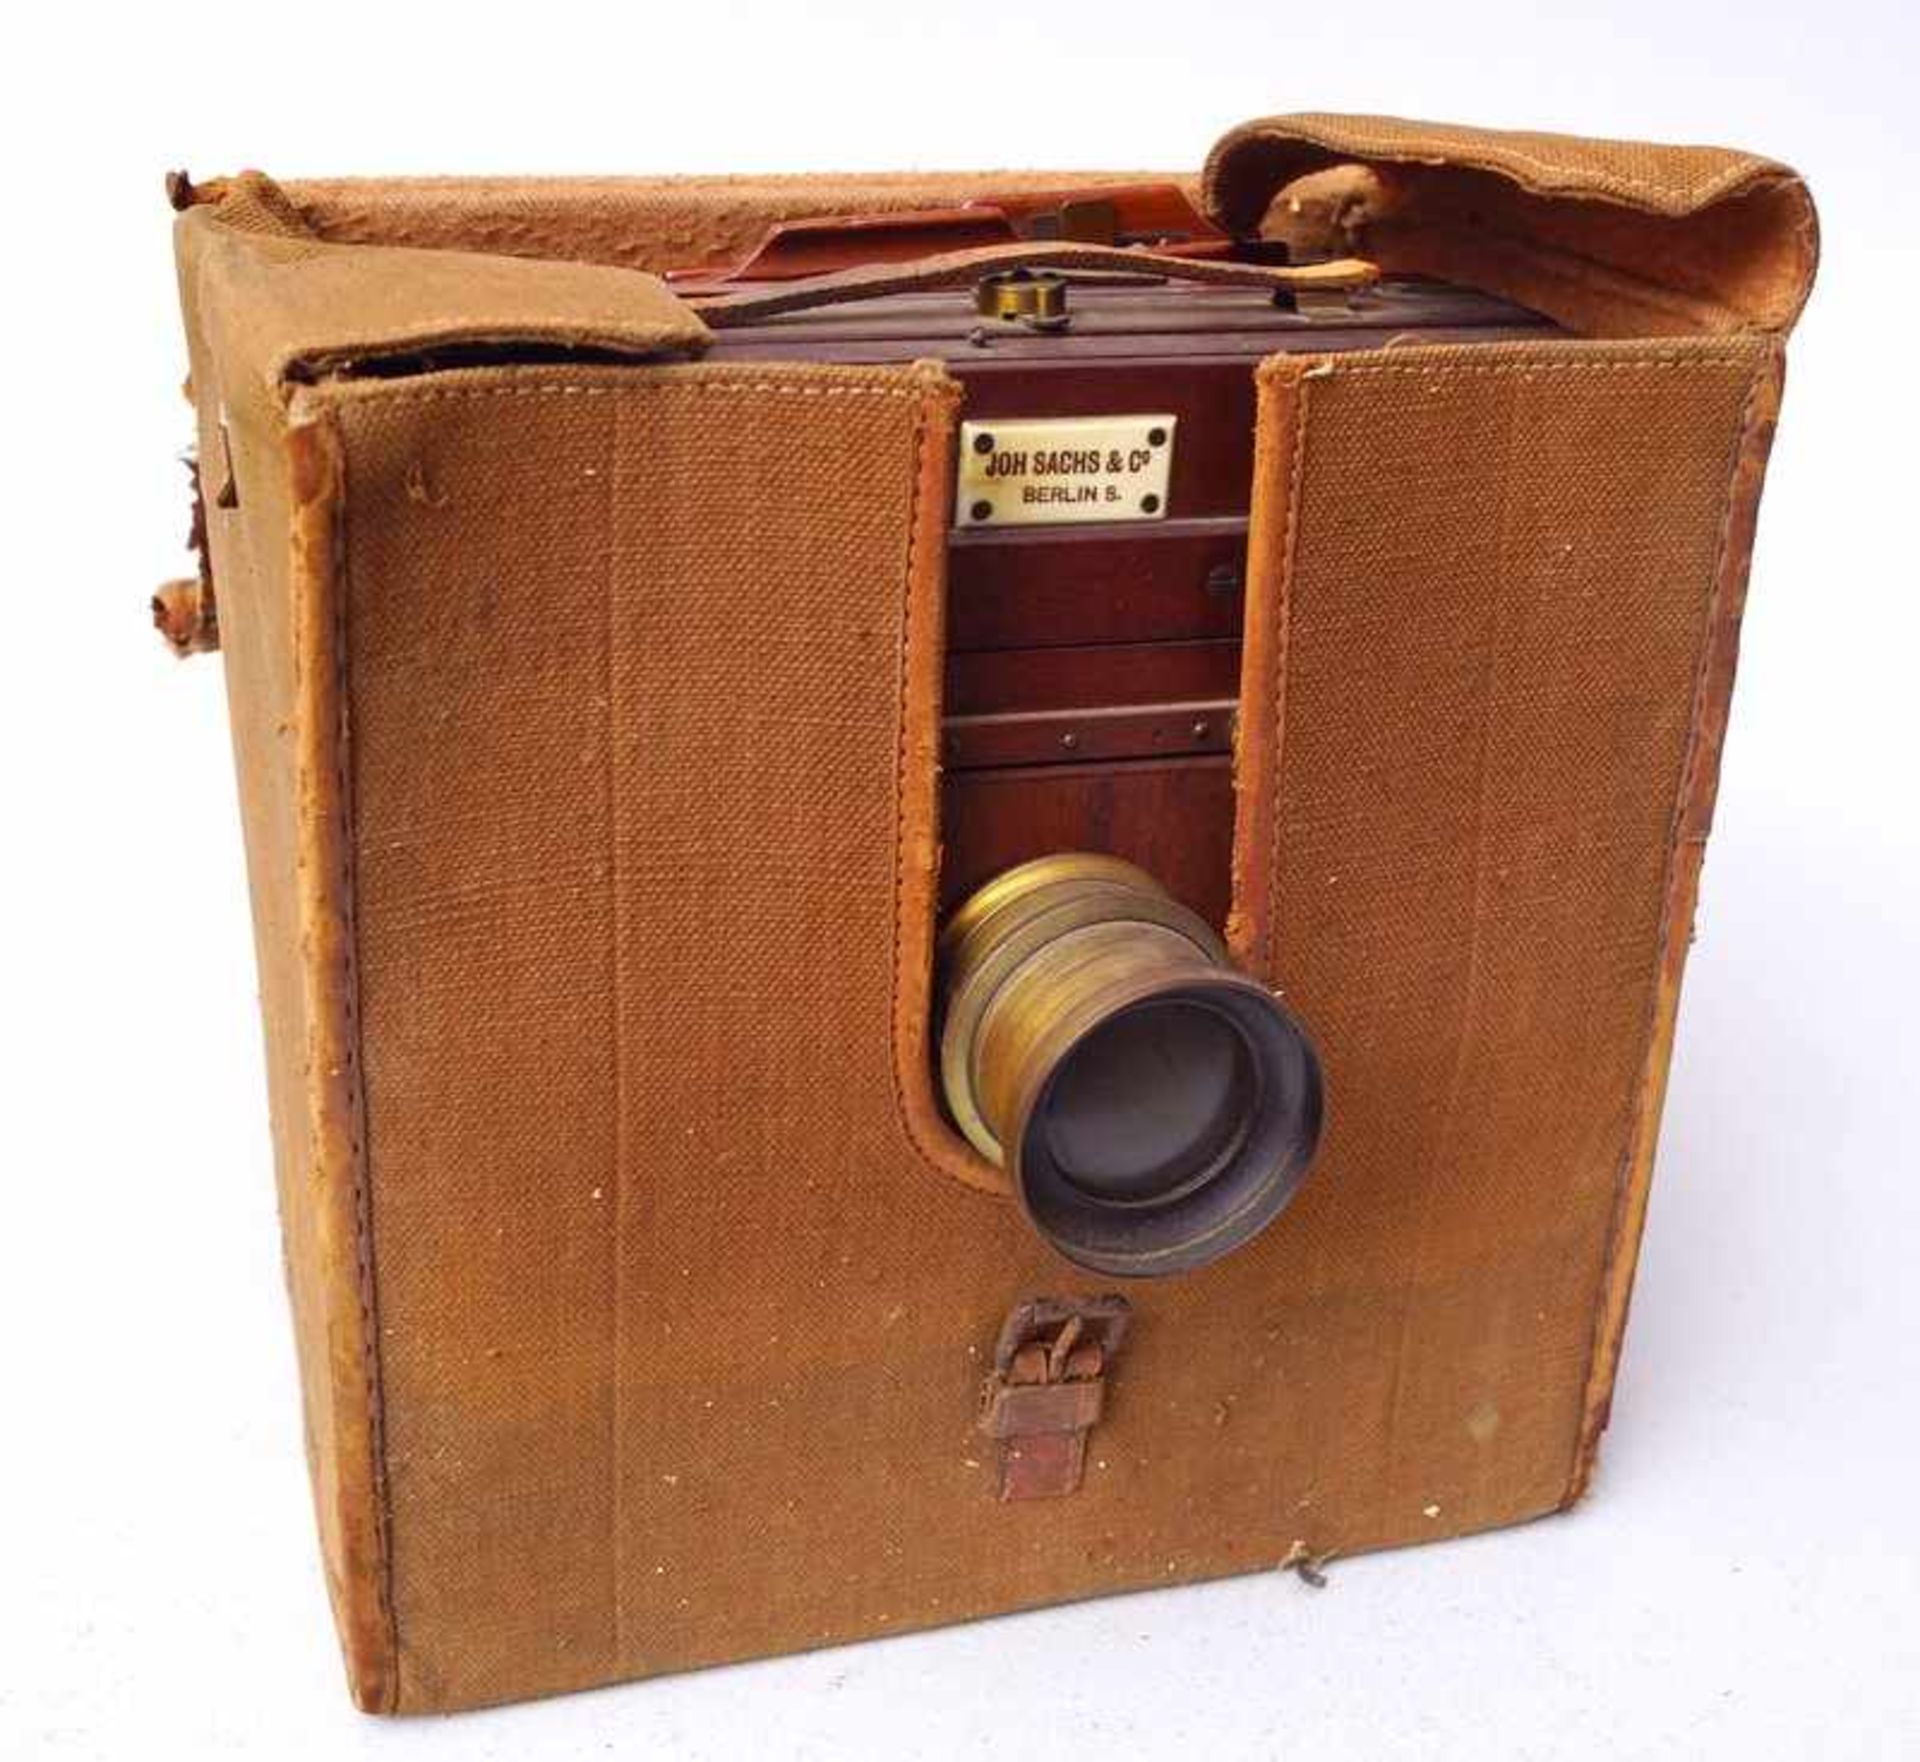 Joh. Sachs & Co. Berlin: Alte Kamera, ca. um 1900